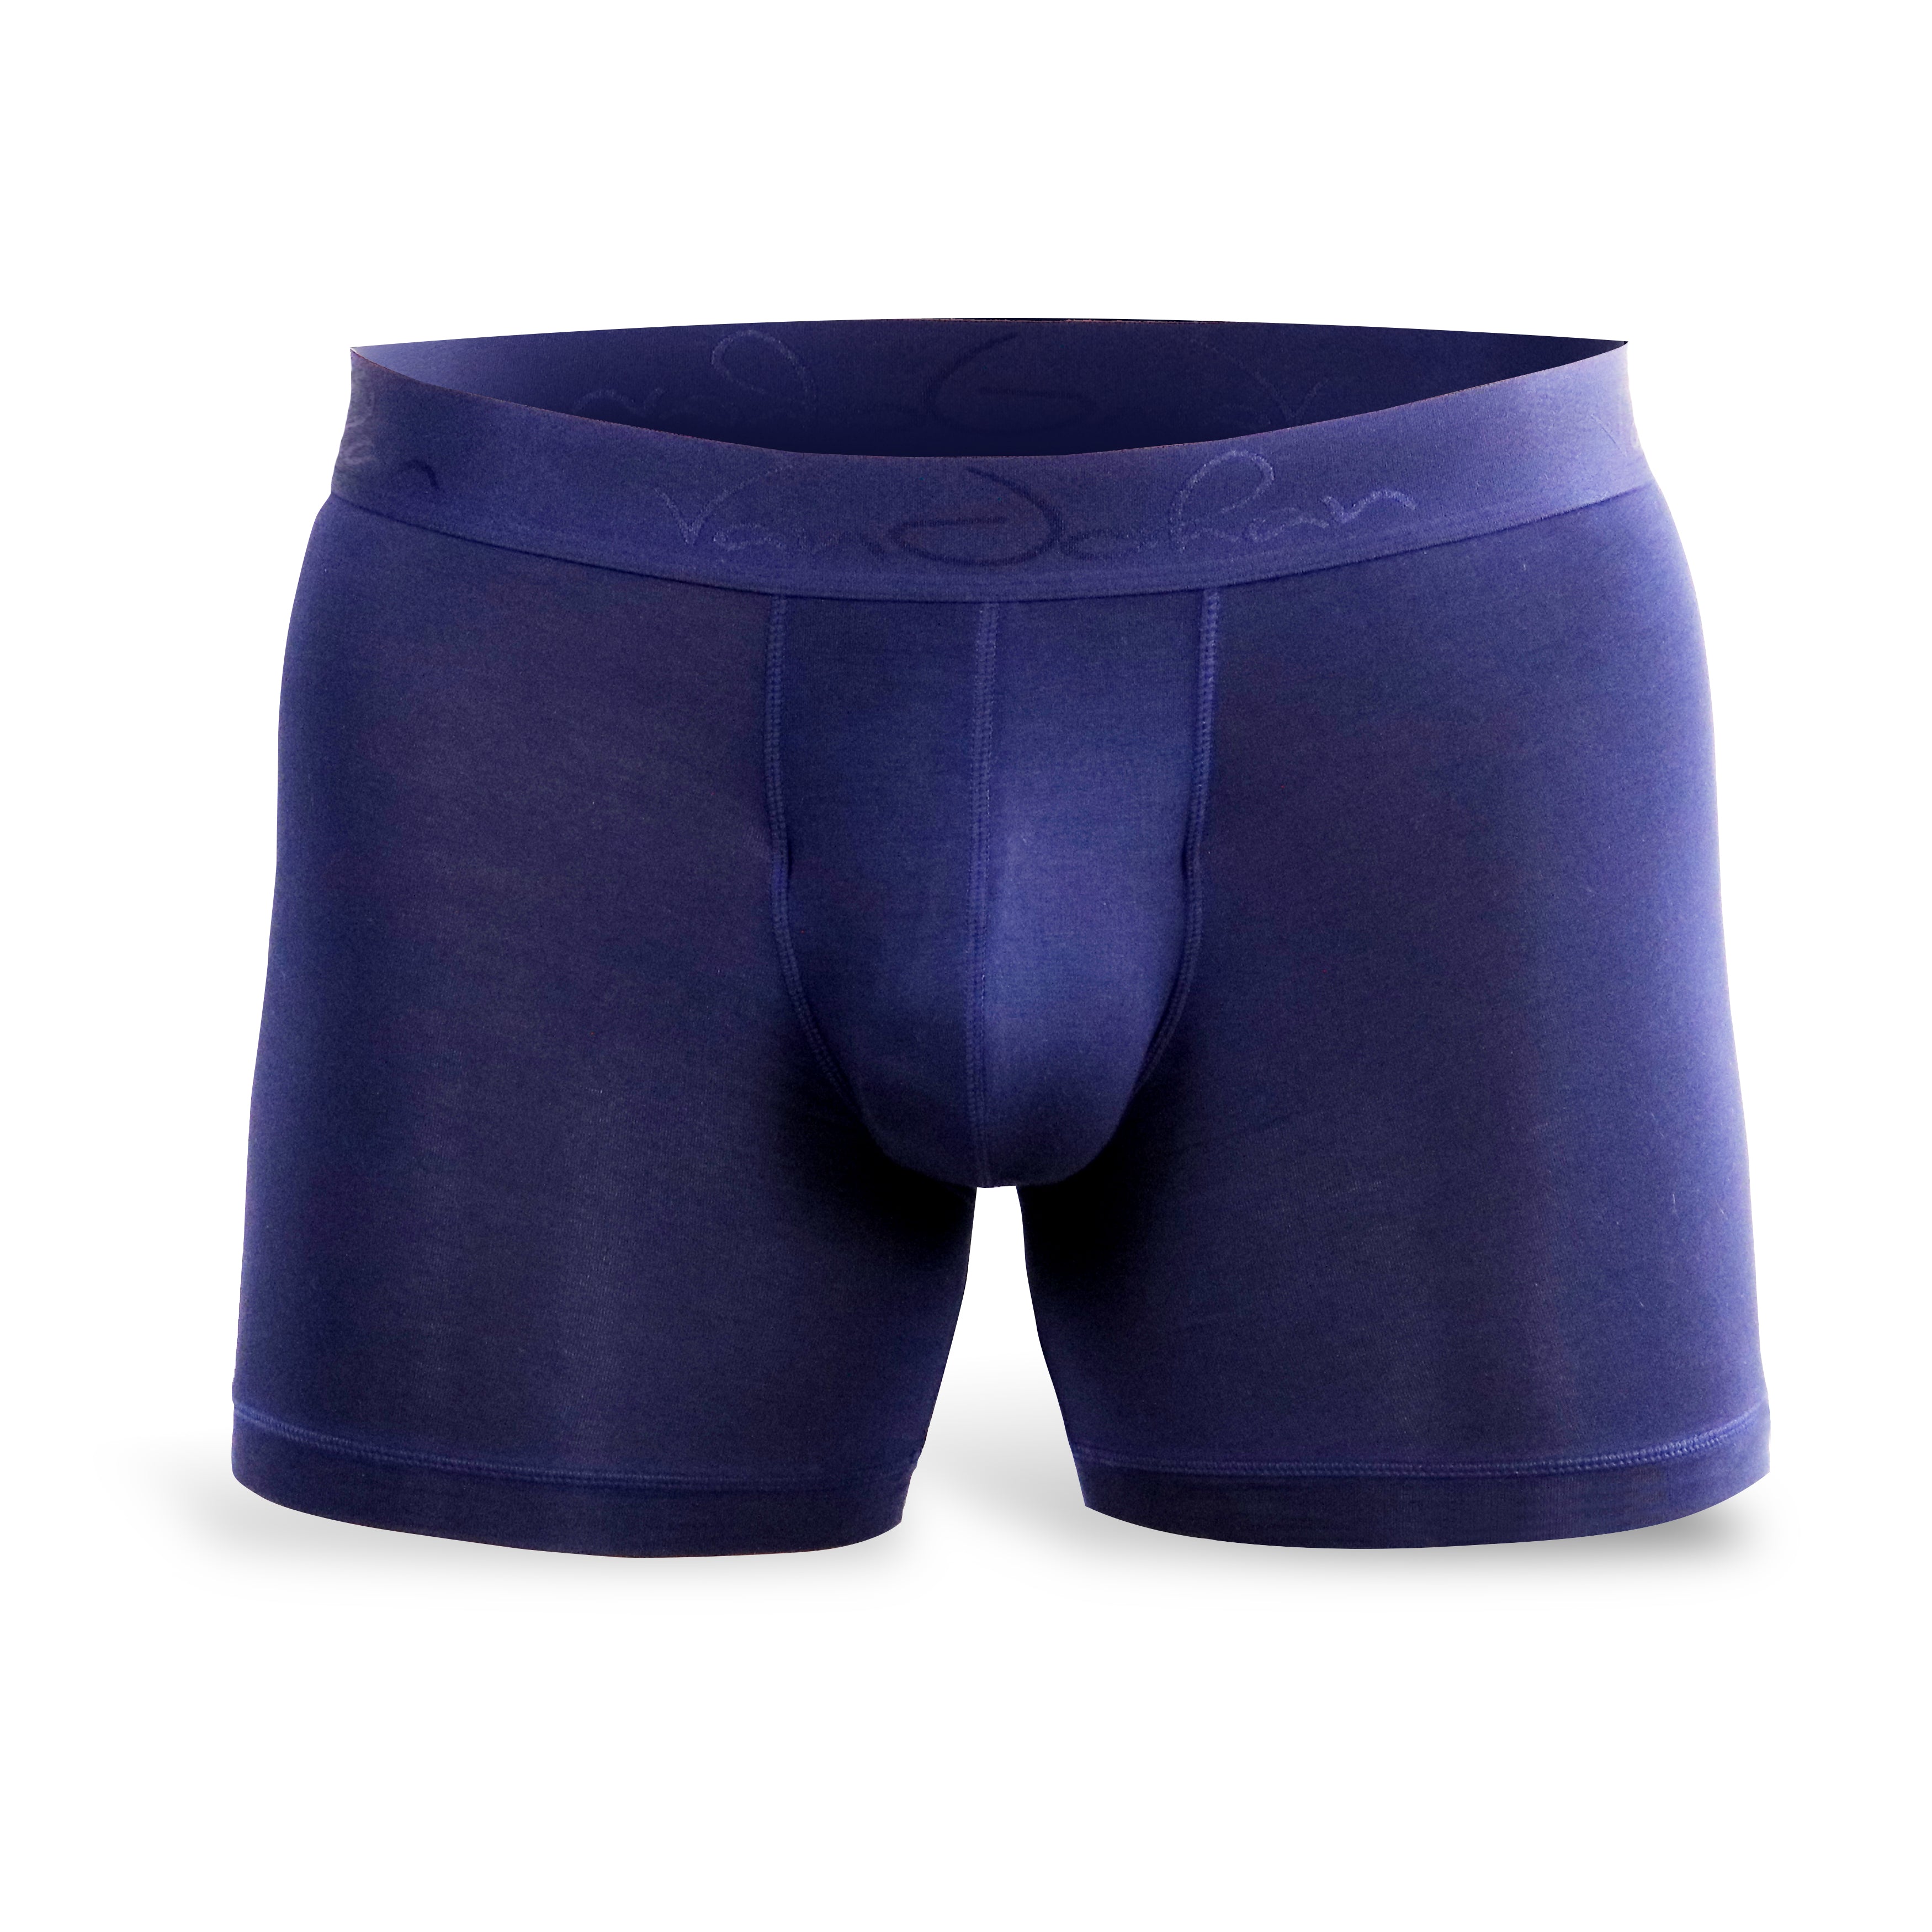 Buy 3 Get 1 Free Royal Navy  Best Mens Underwear for Ball Support –  VanJohan Underwear